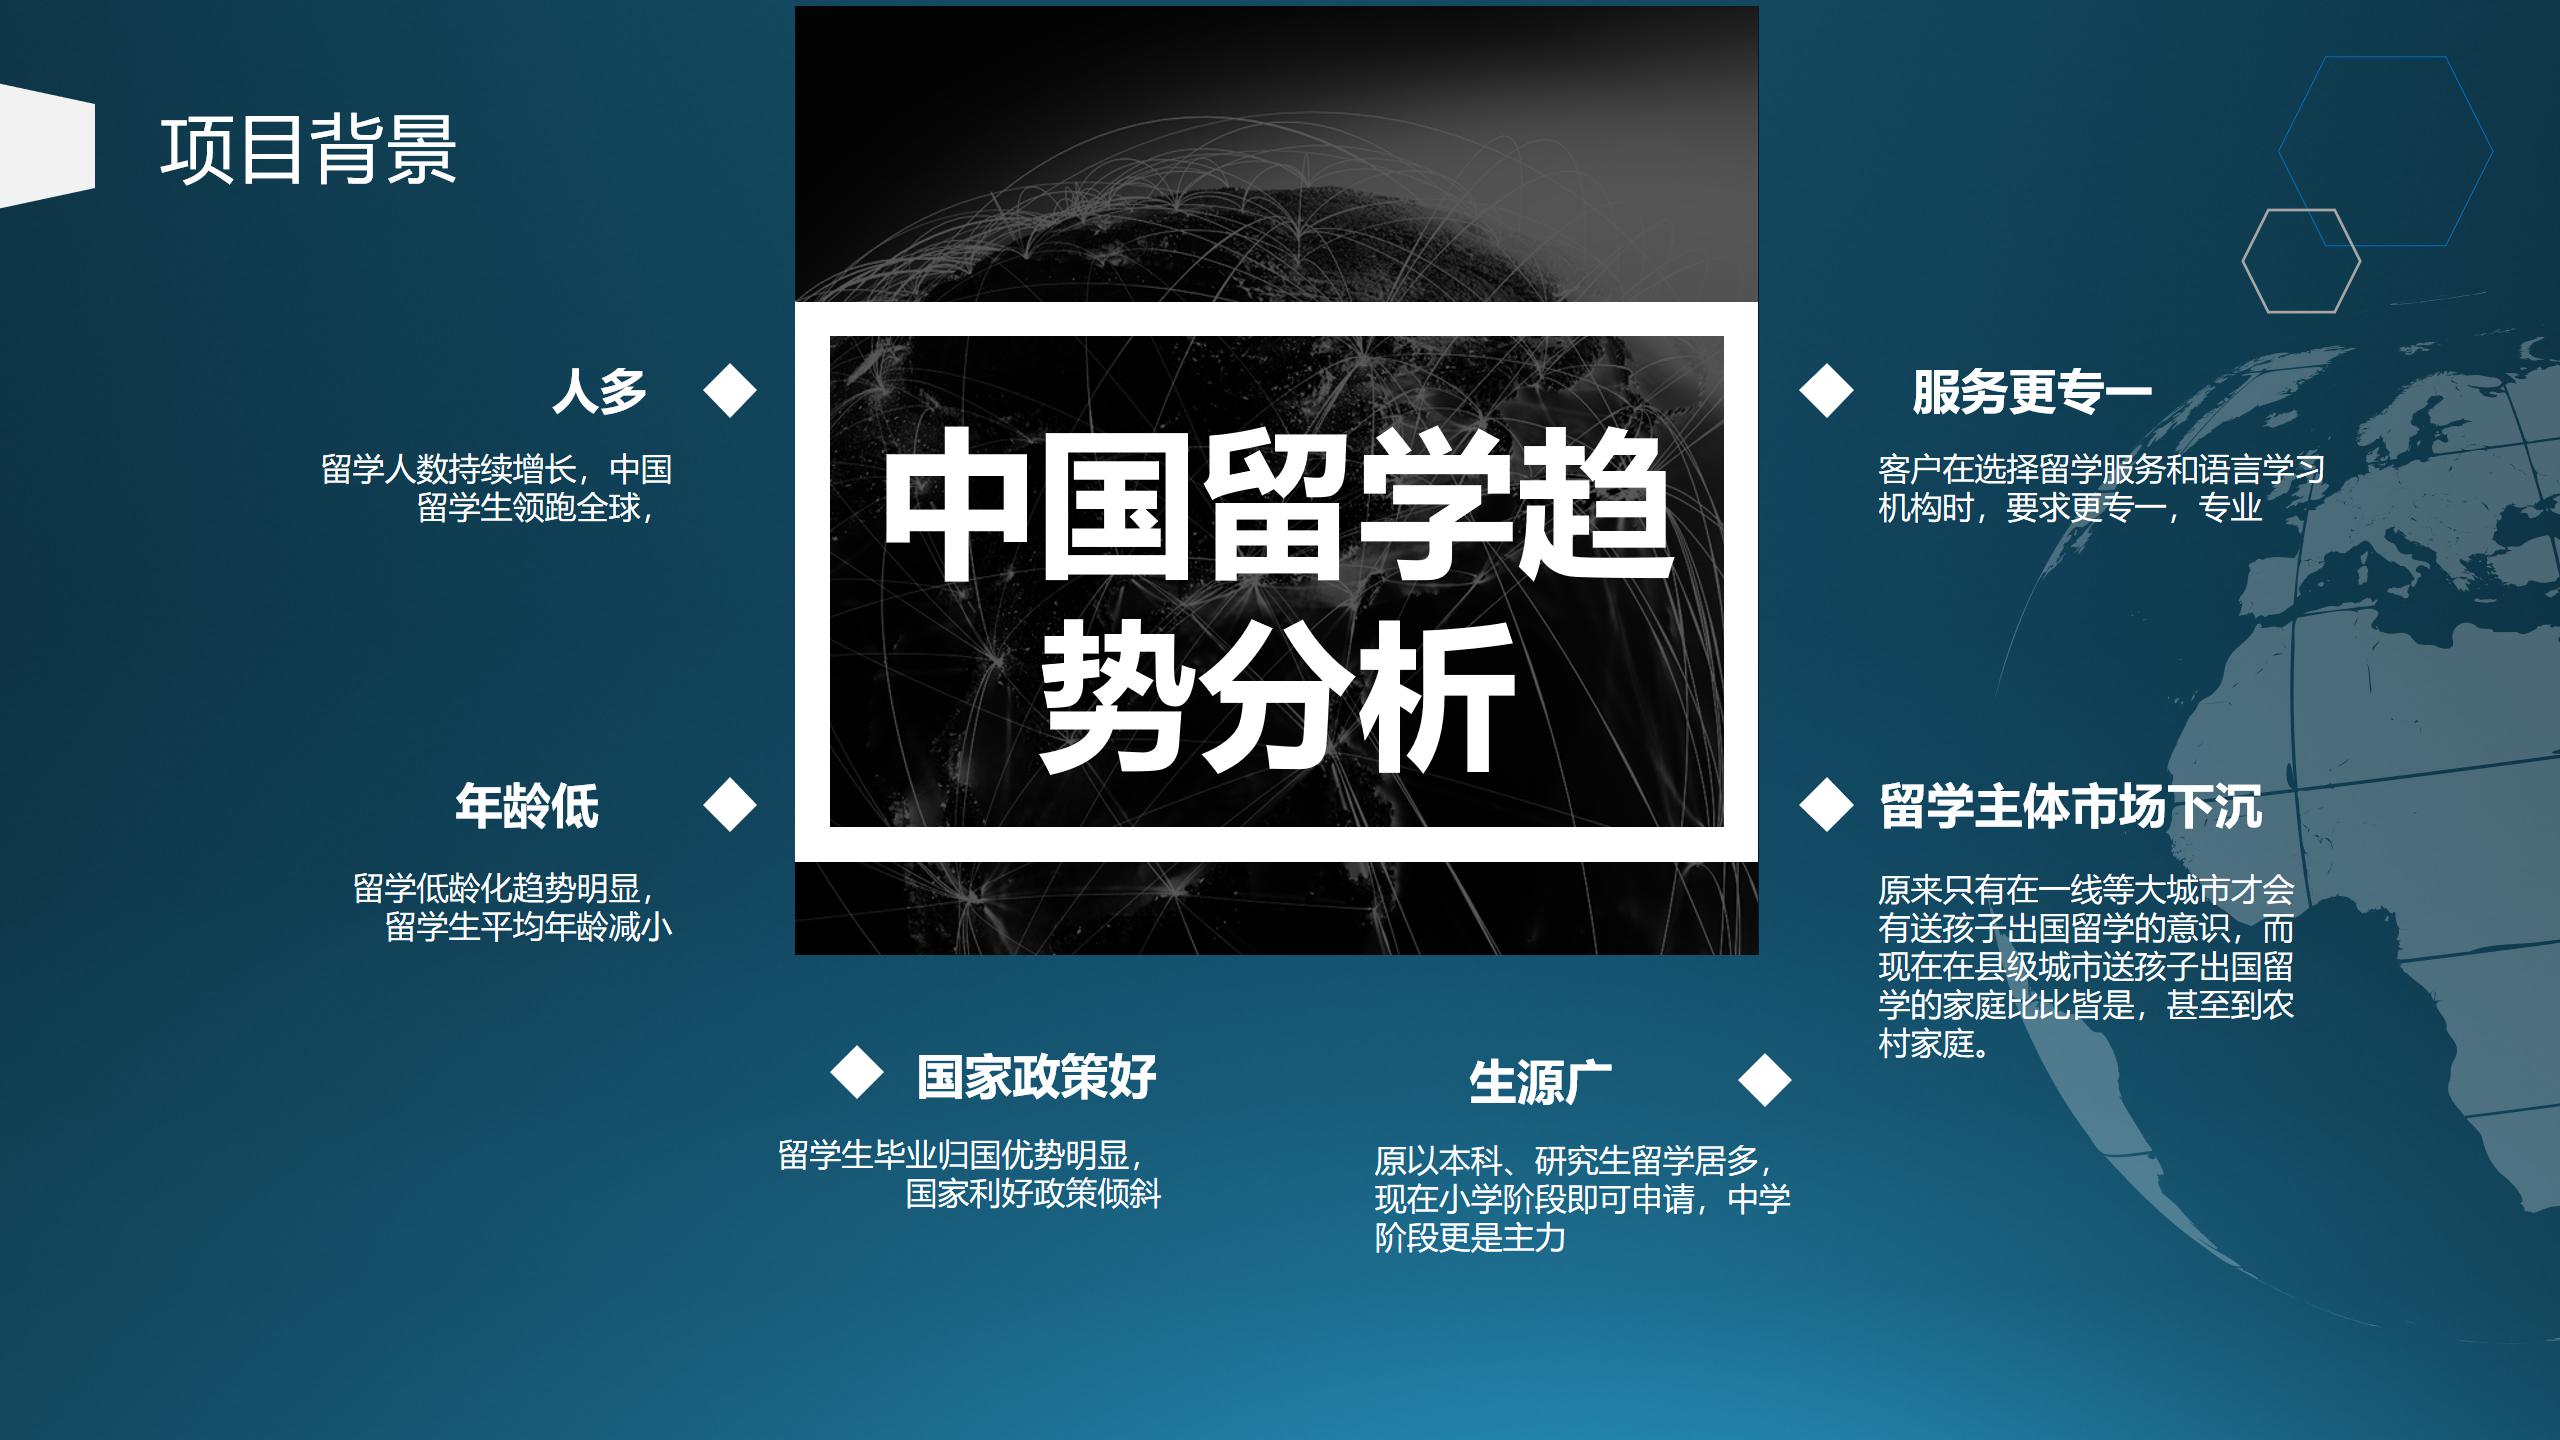 网站用上海博桥留学加盟说明 - 副本_03.jpg